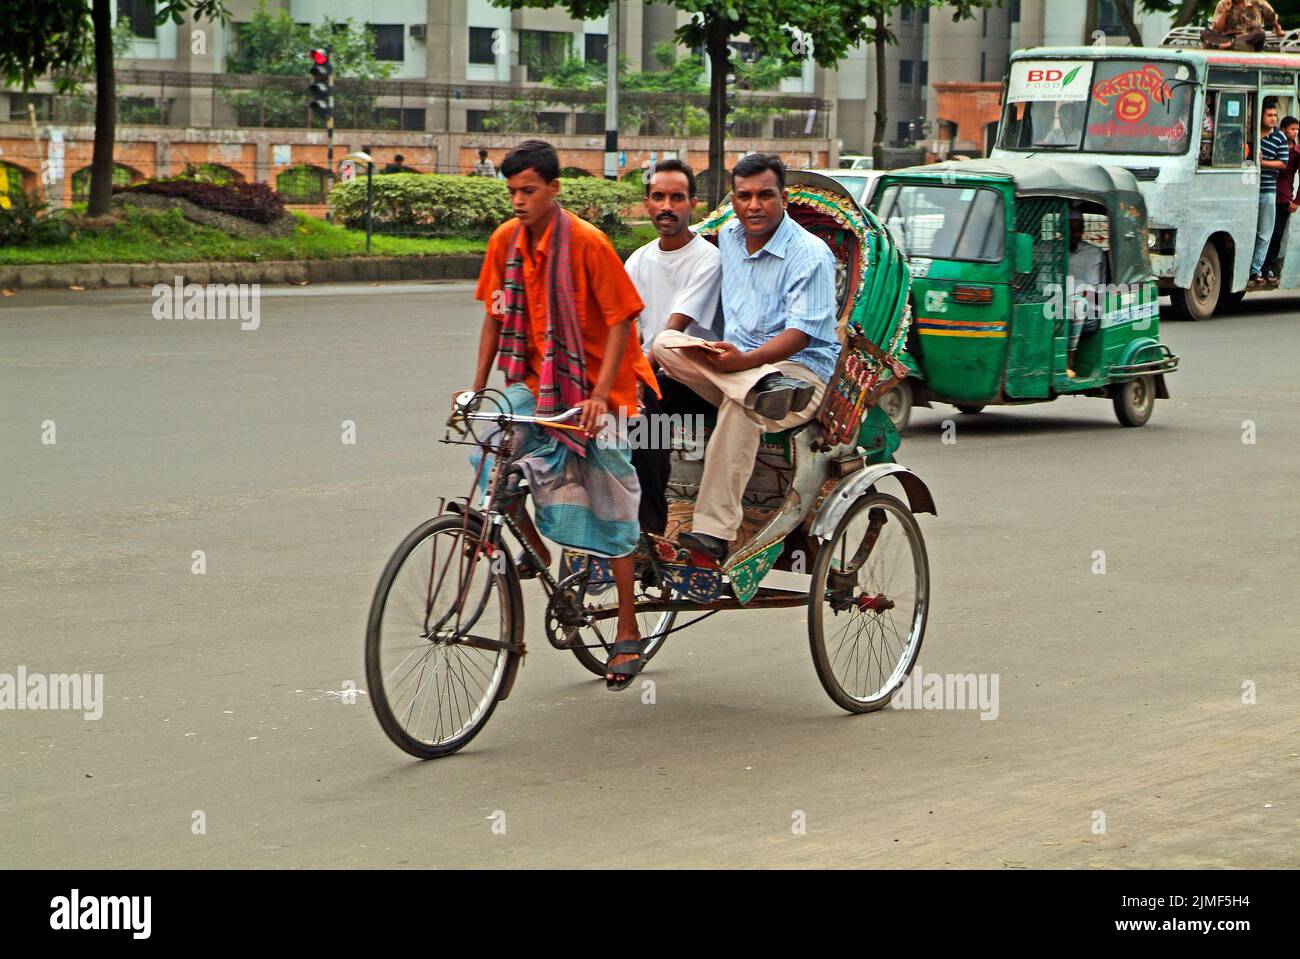 Dhaka, Bangladesh - 17 septembre 2007: Des personnes non identifiées dans le pousse-pousse à vélo traditionnel et le pousse-pousse motorisé appelé Tuk-Tuk Banque D'Images